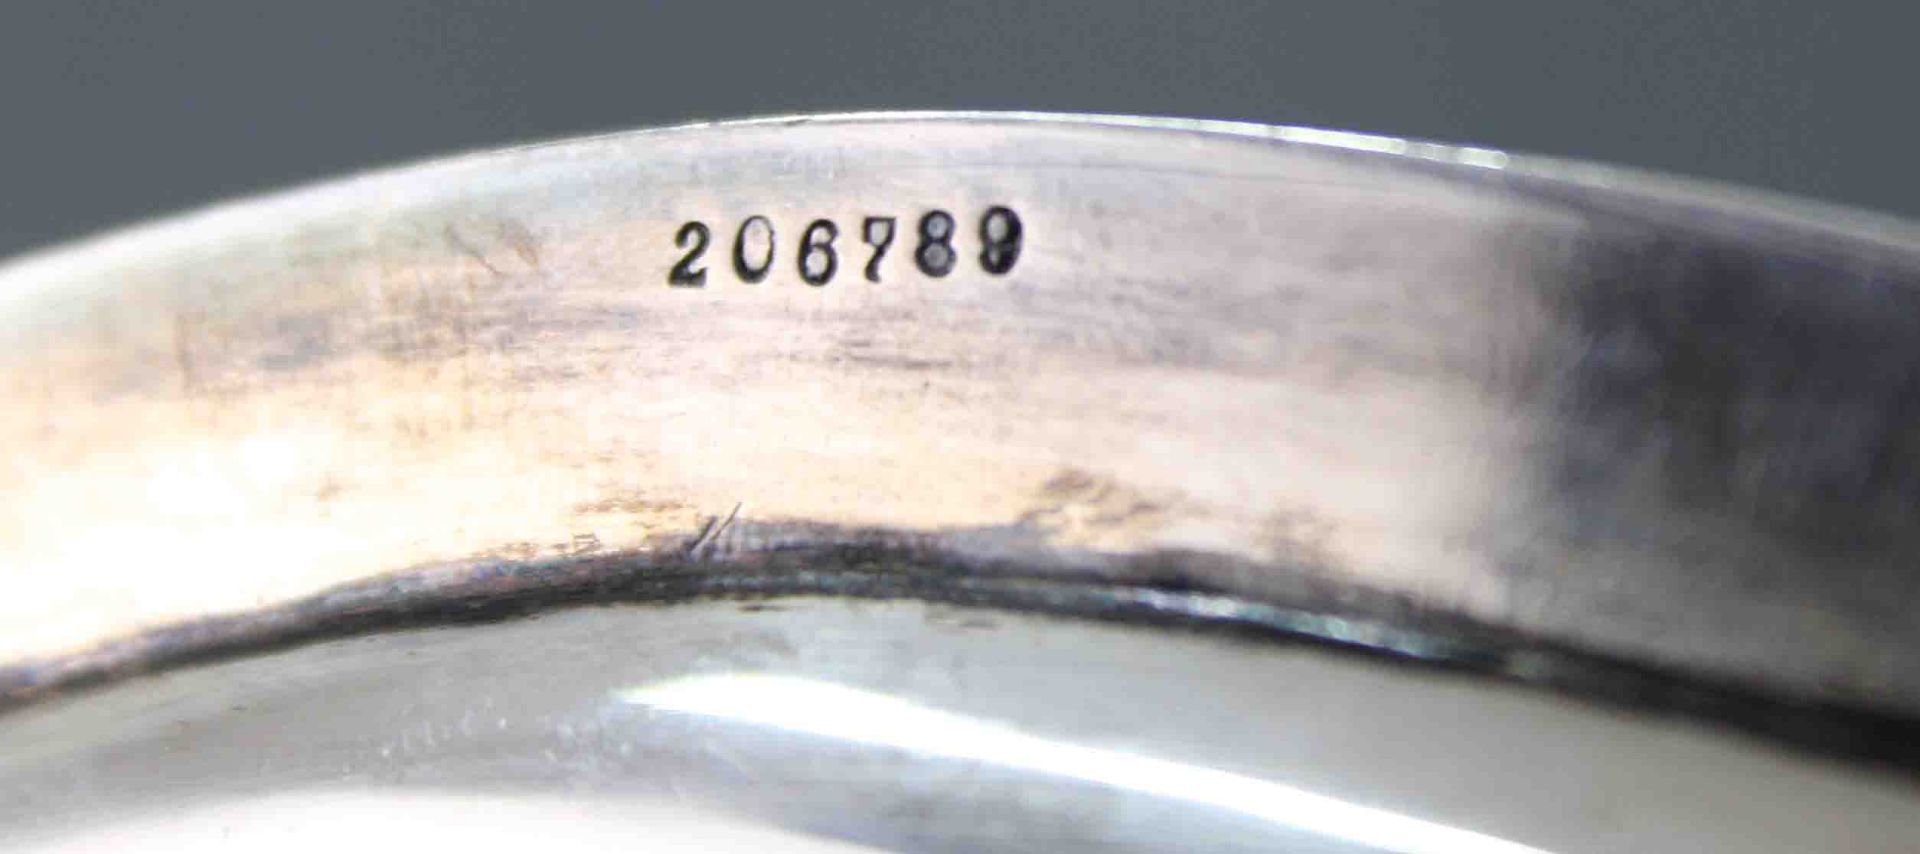 Großer Teller Wilkens, Silber 800. Hessenberg Frankfurt a. Main.1098 Gramm. Durchmesser 35 cm. Mit - Bild 7 aus 9